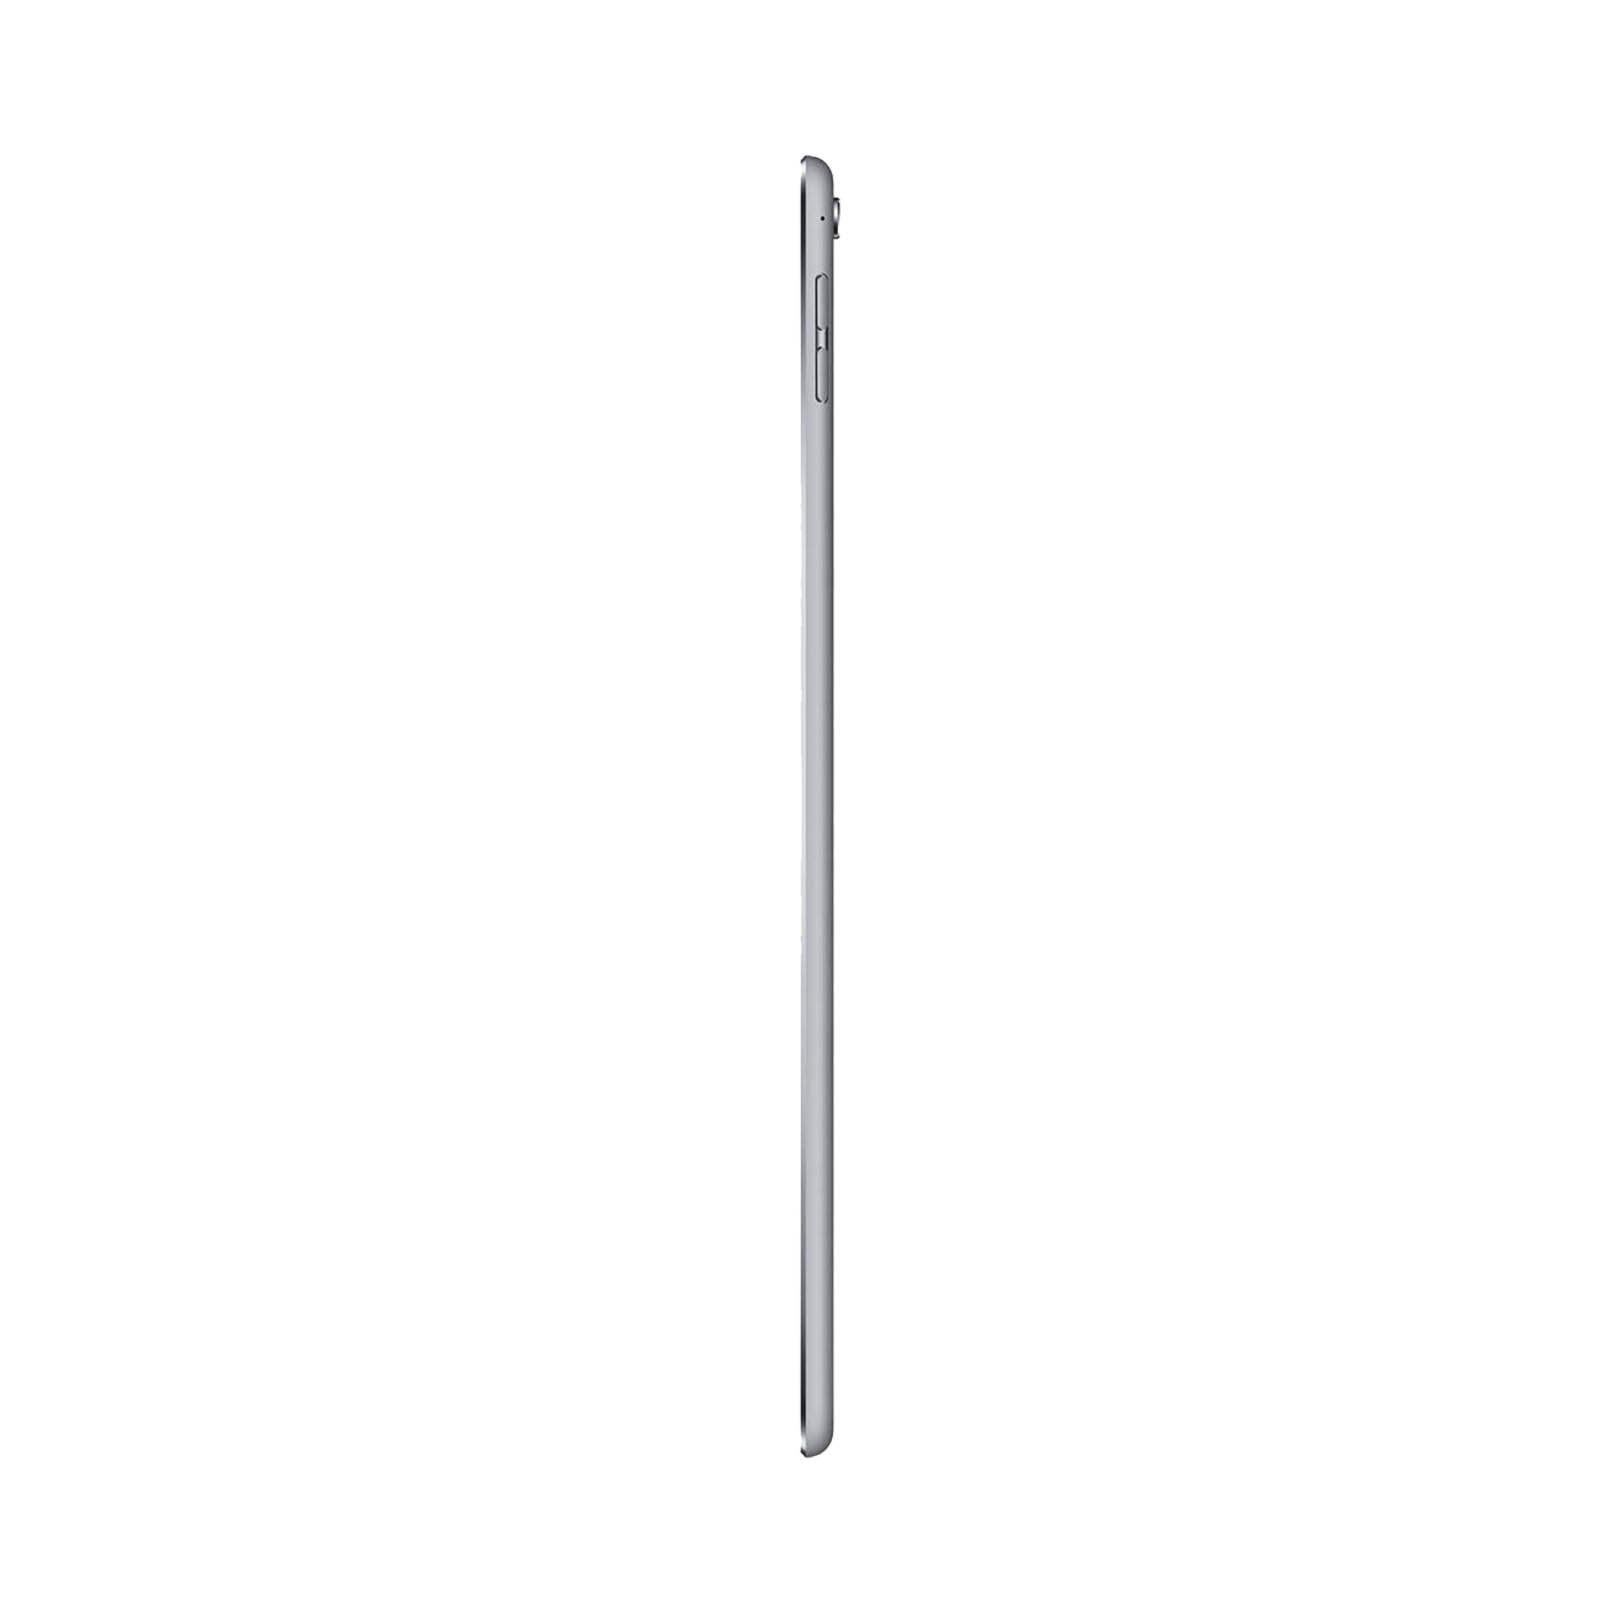 iPad Pro 9.7 Inch 256GB Space Grey Good - WiFi